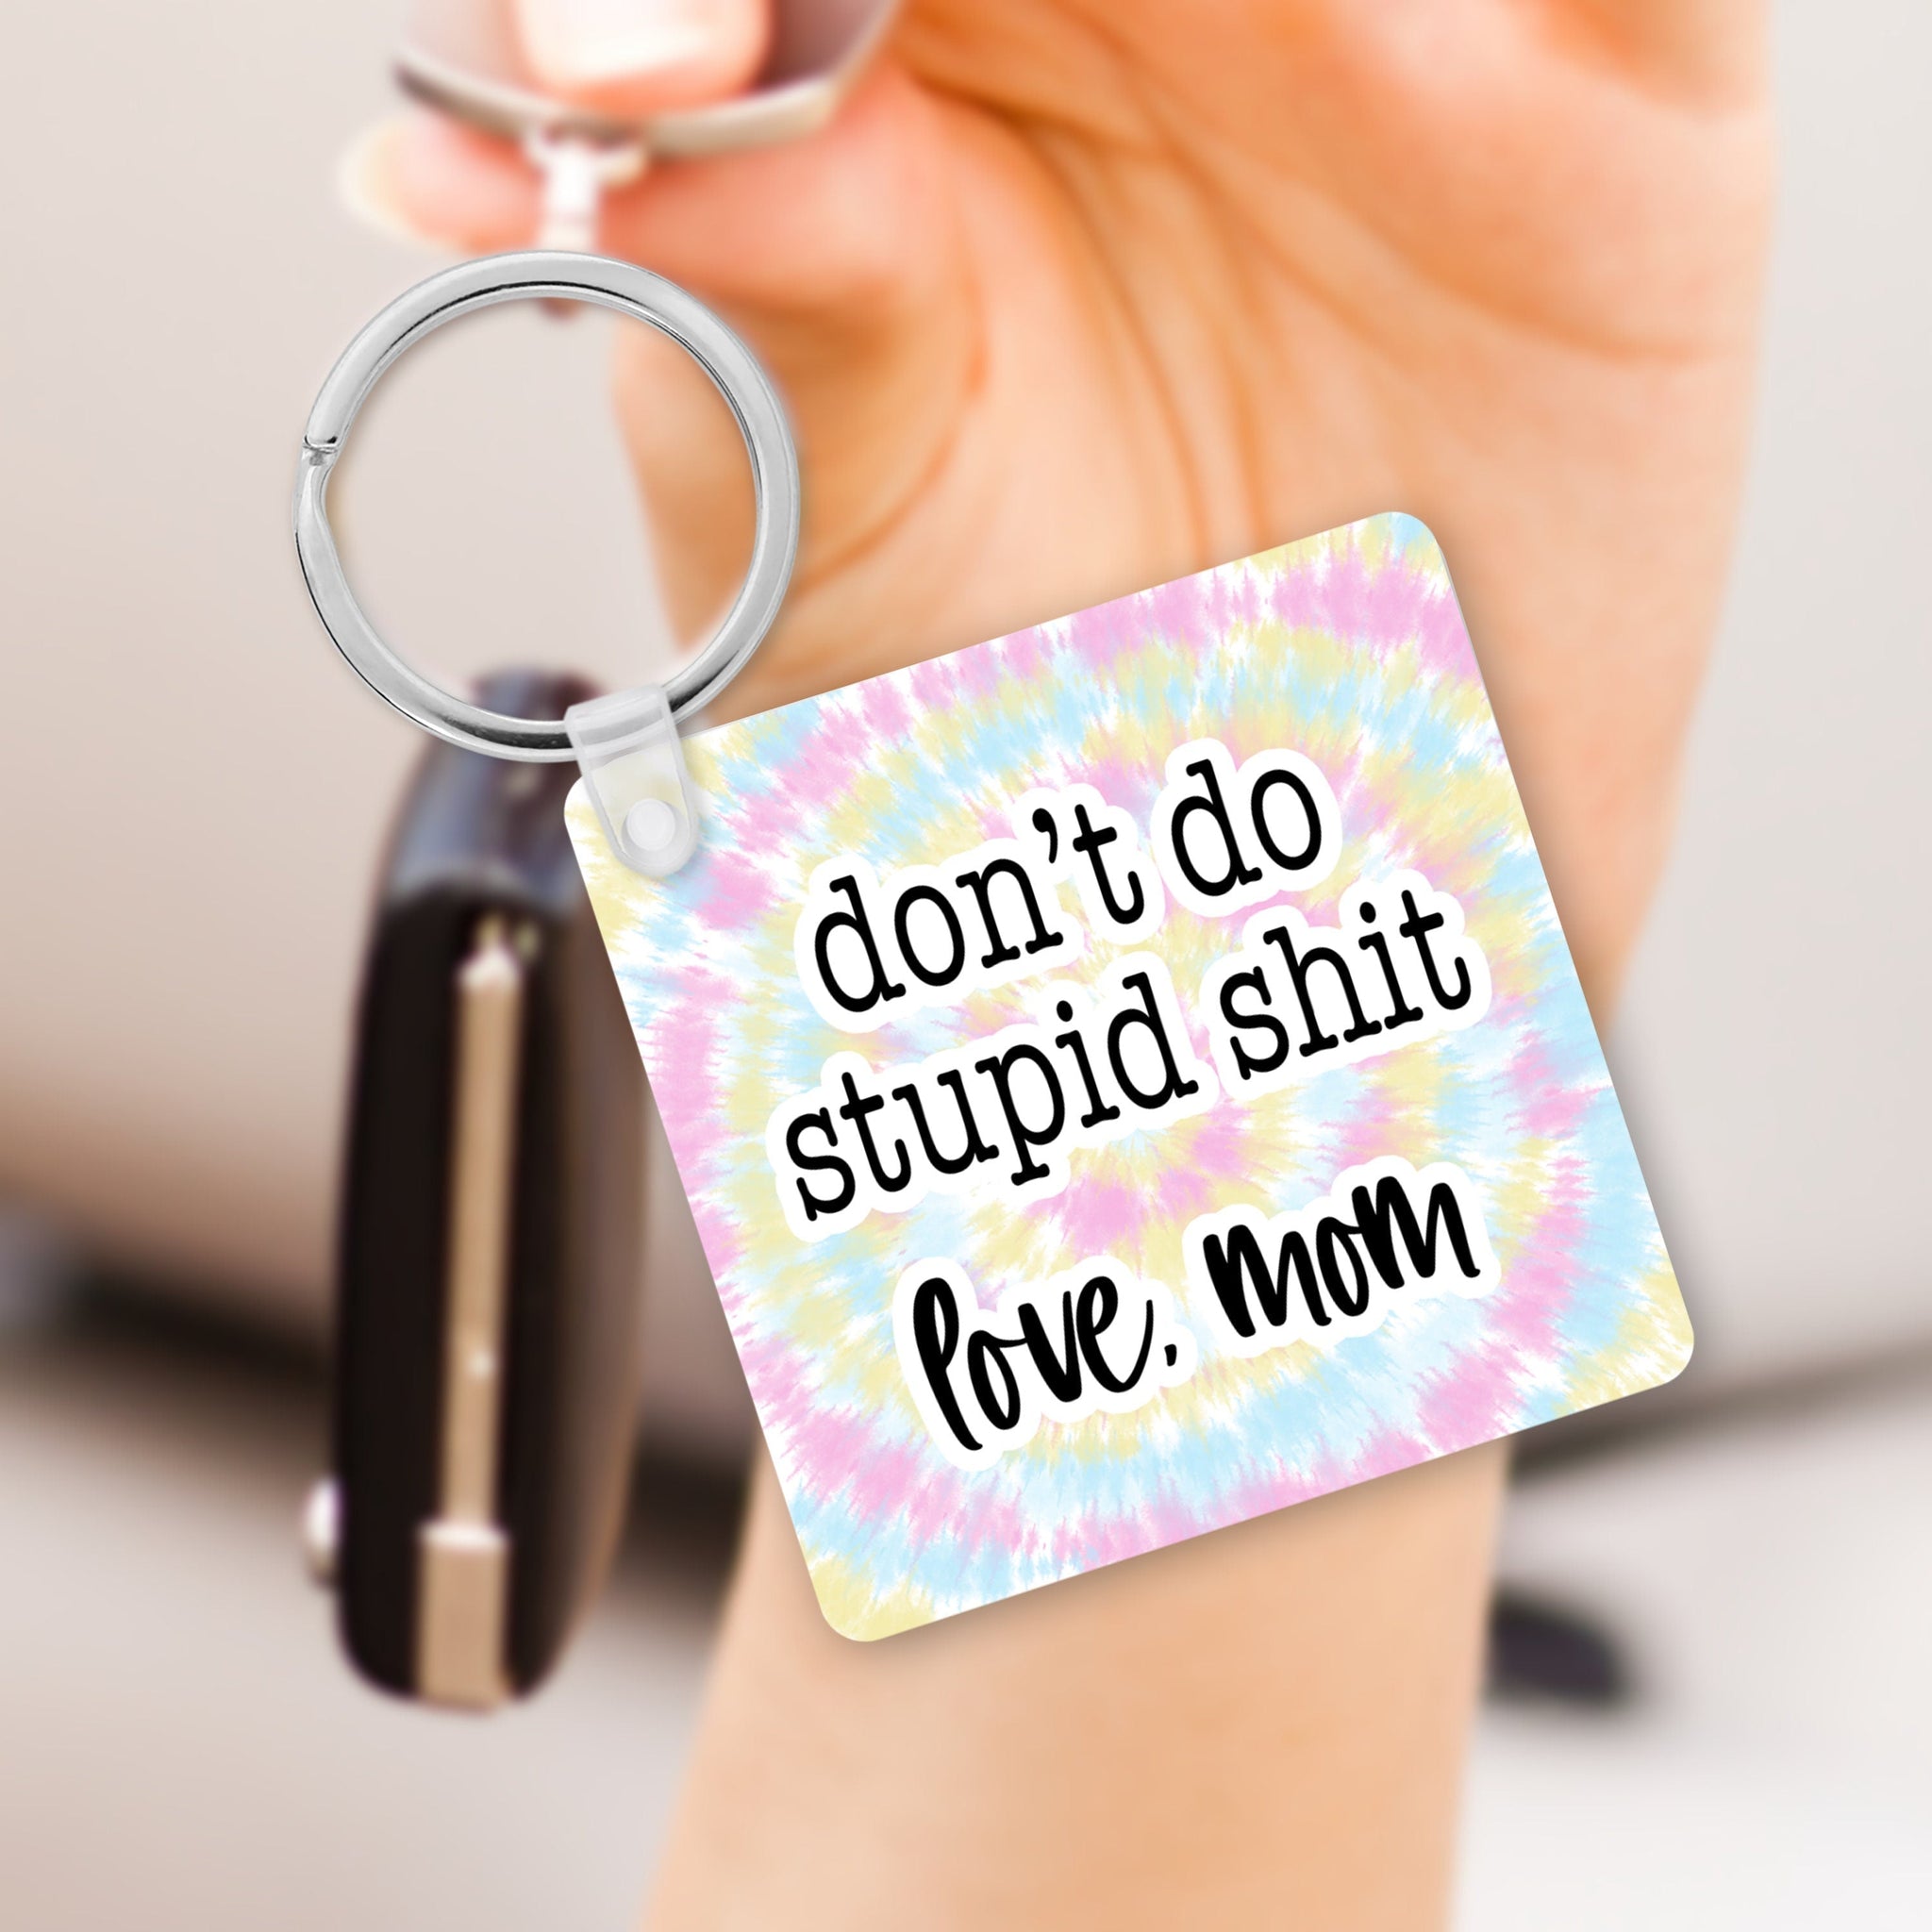 Don't Do Stupid Sht. Love Mom Keychain 